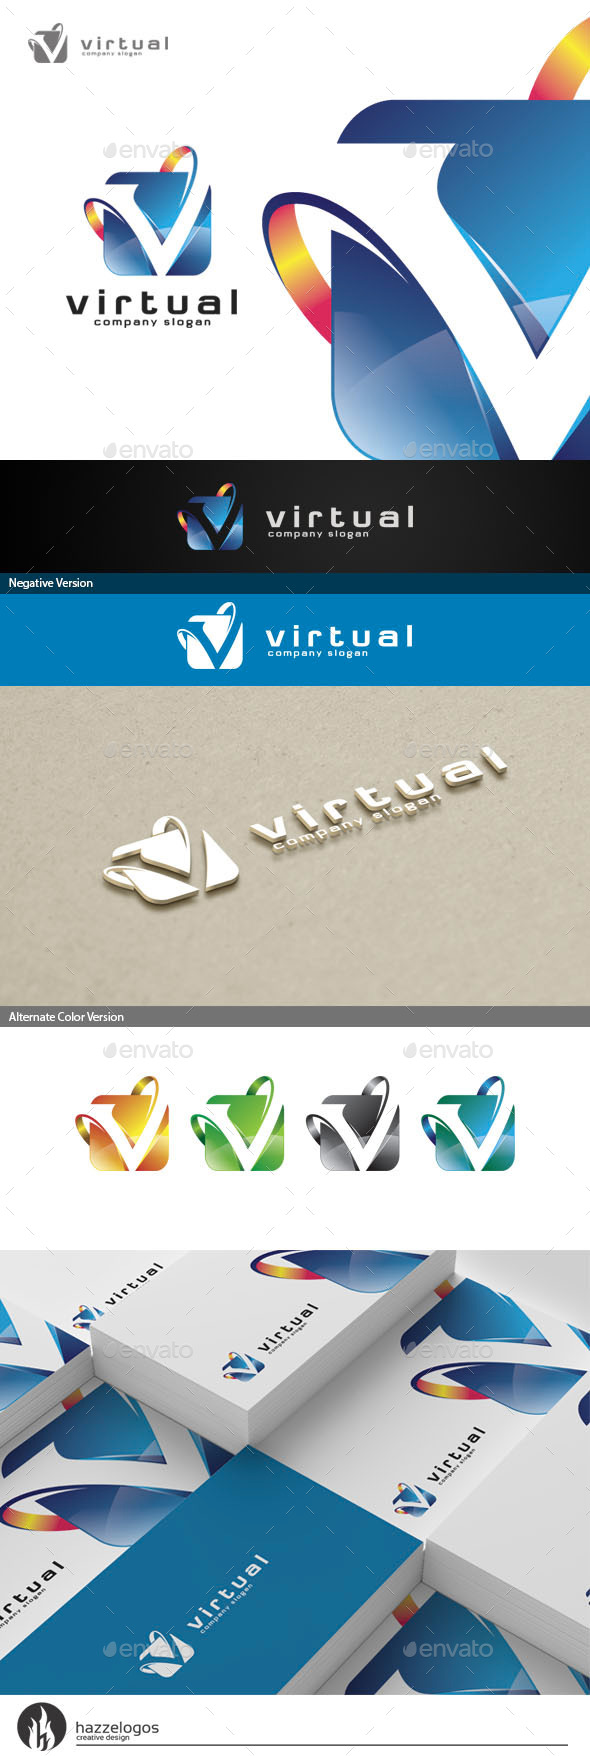 Virtual - Letter V Logo